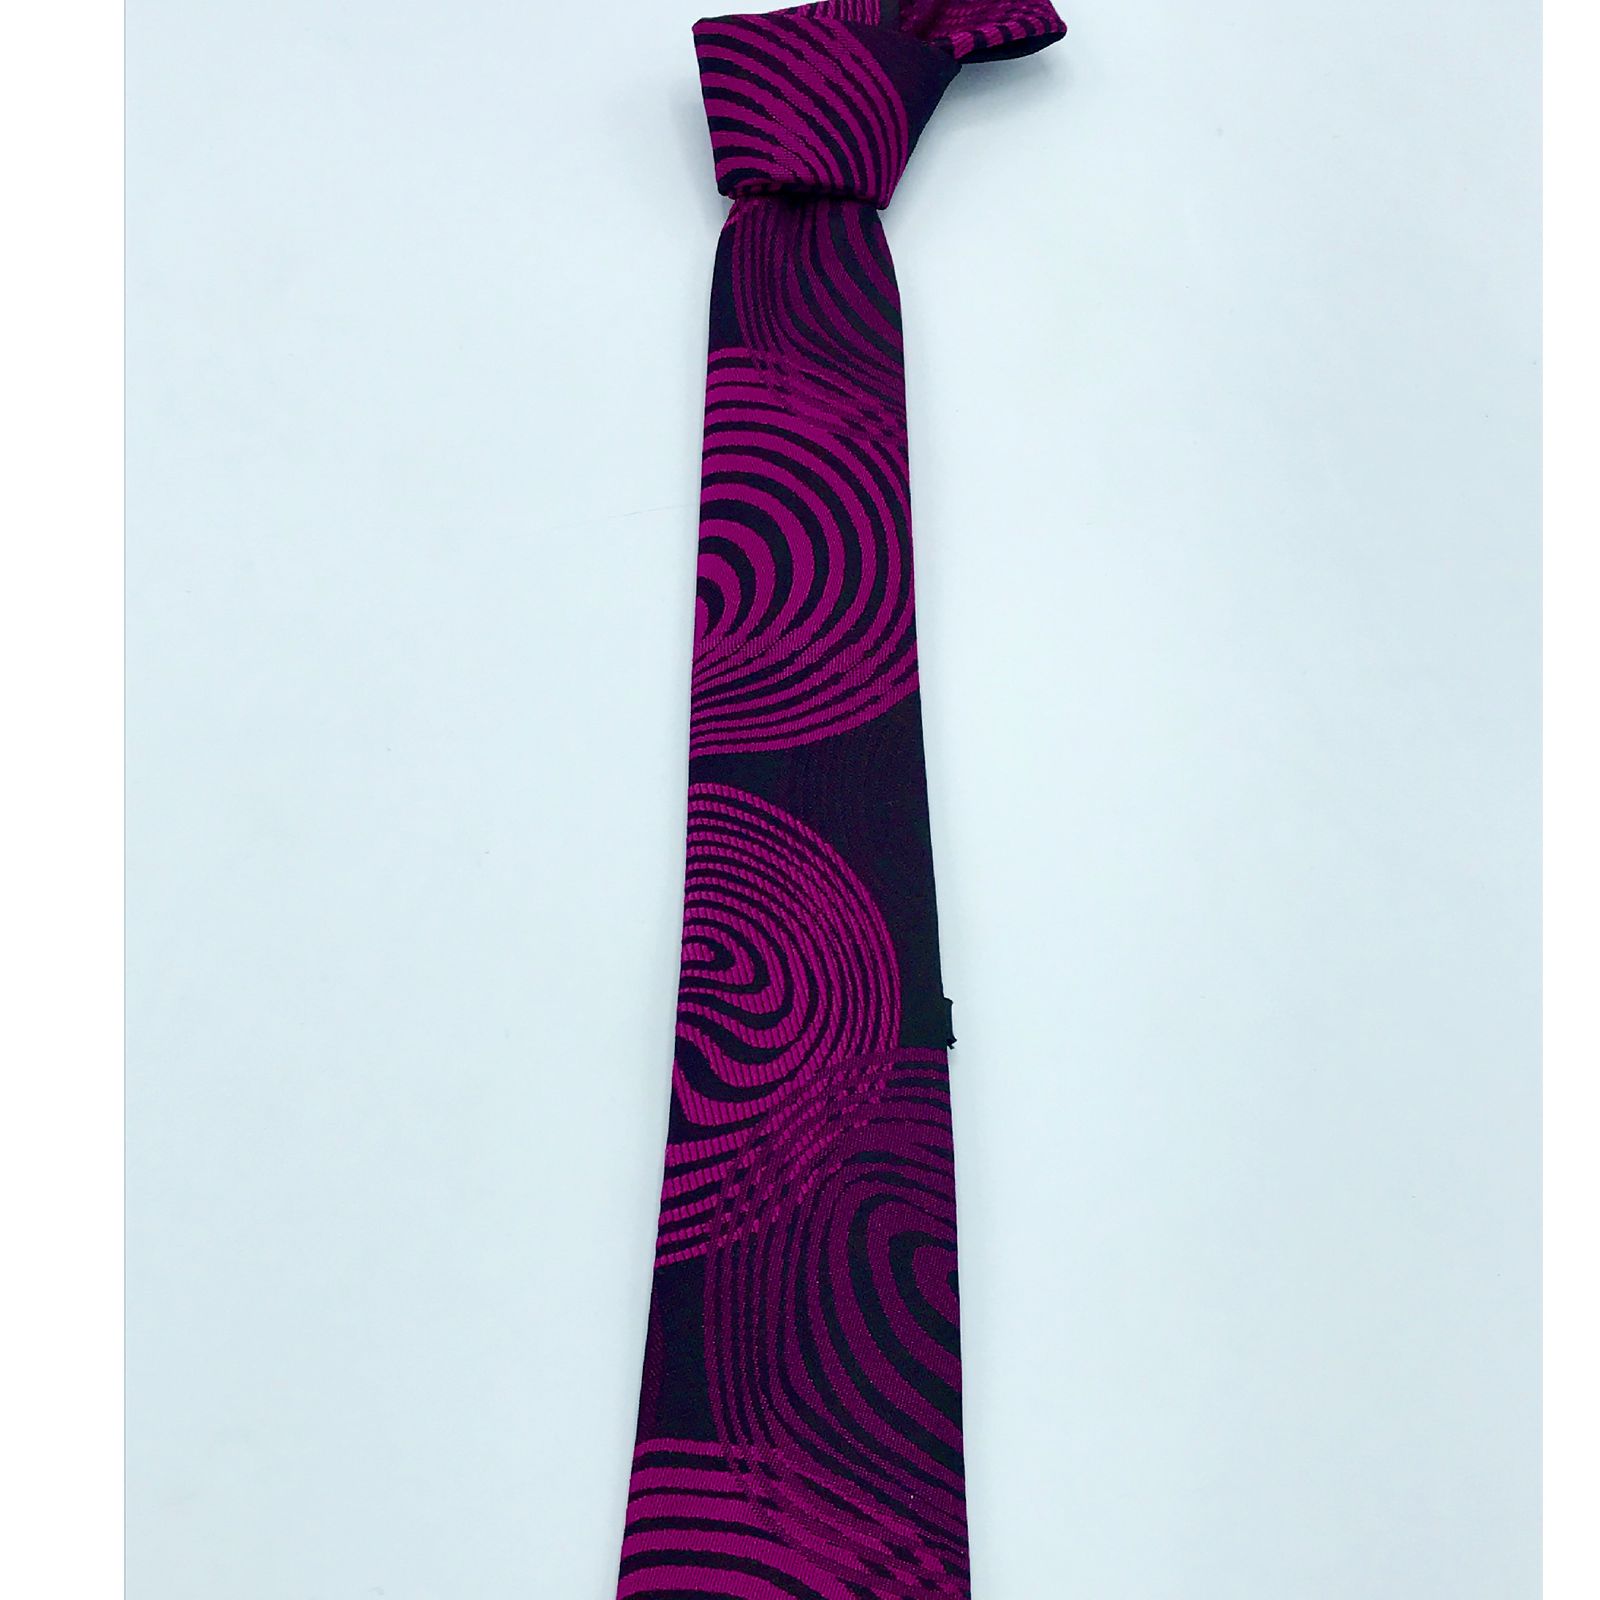  کراوات مردانه هکس ایران مدل KT-PRPL DYR -  - 3